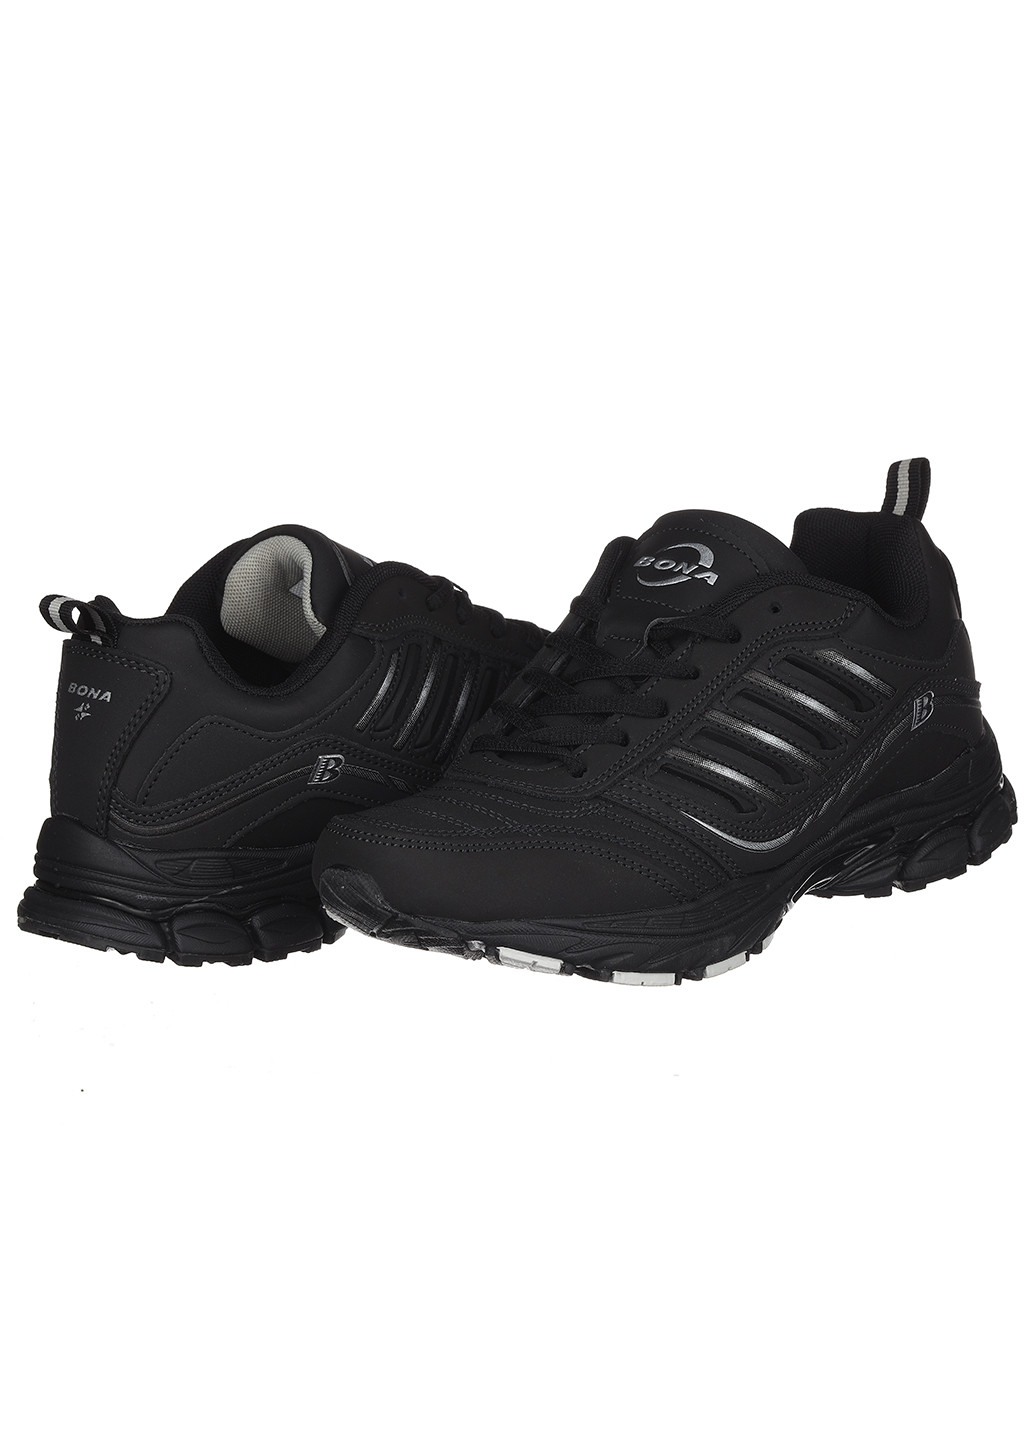 Чорні осінні жіночі кросівки 628d-2 Bona